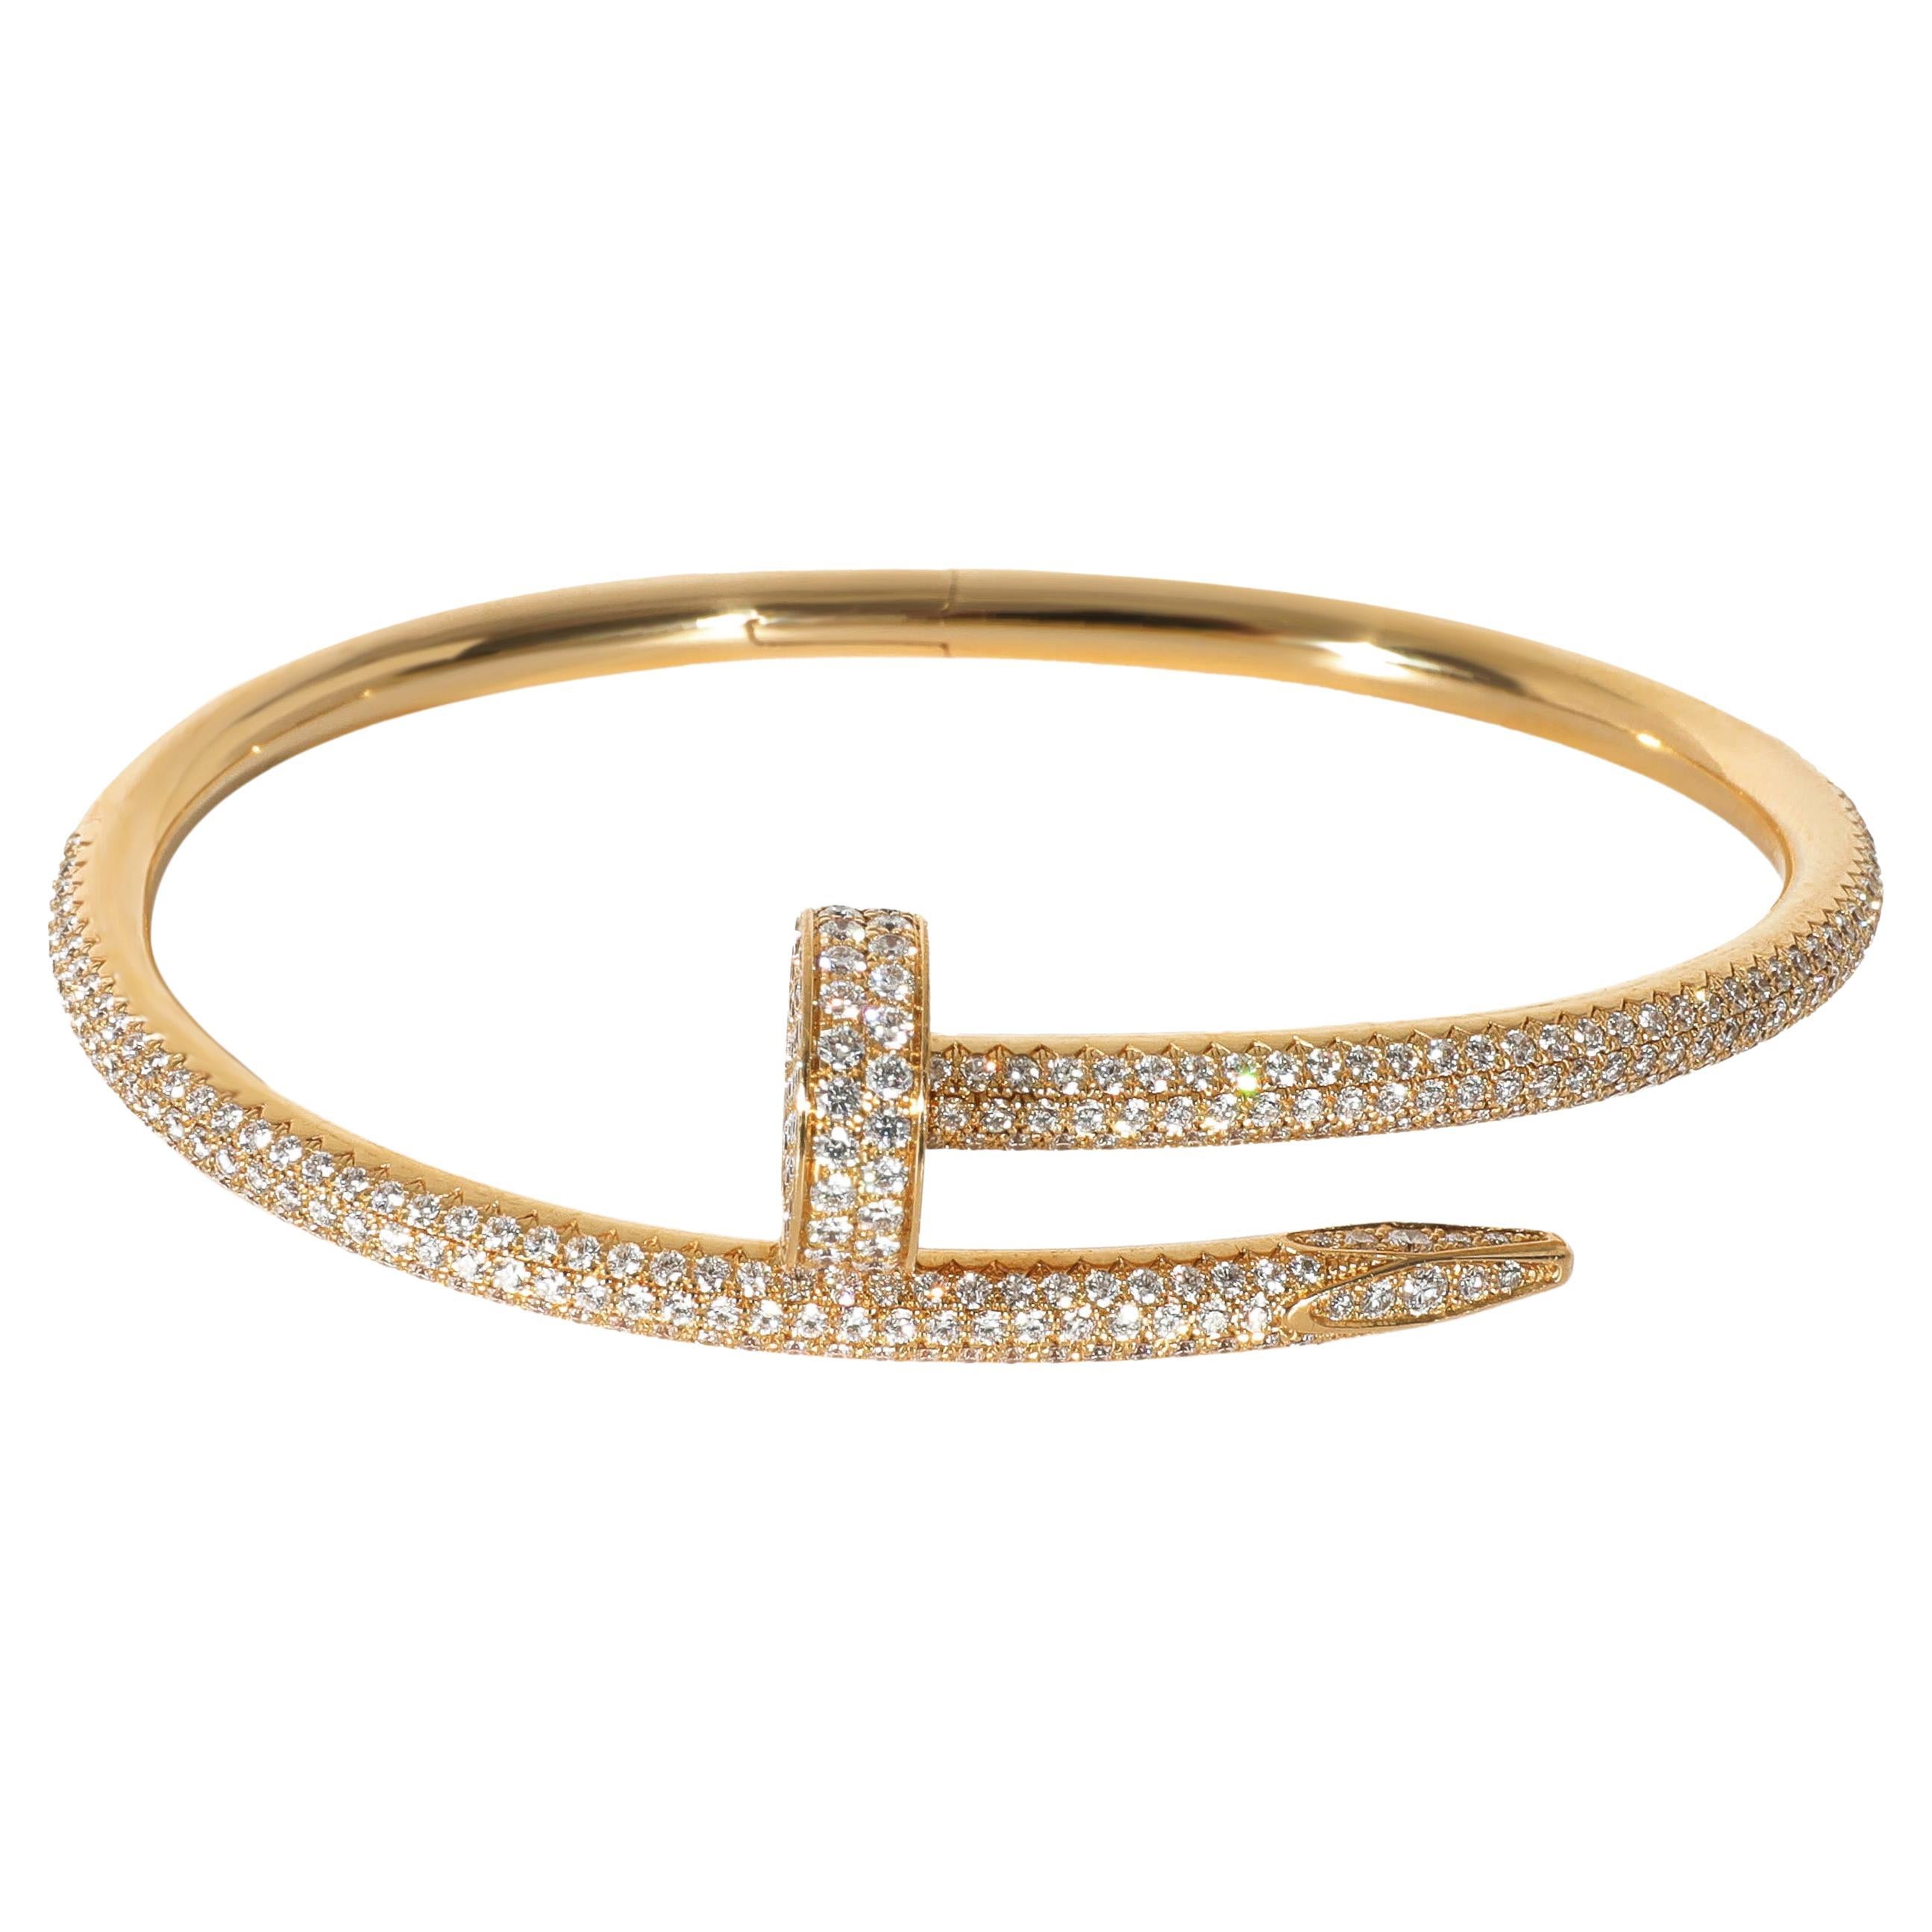 Cartier Juste Un Clou Diamond Pave Bracelet in 18k Yellow Gold 2.26 Ctw For Sale